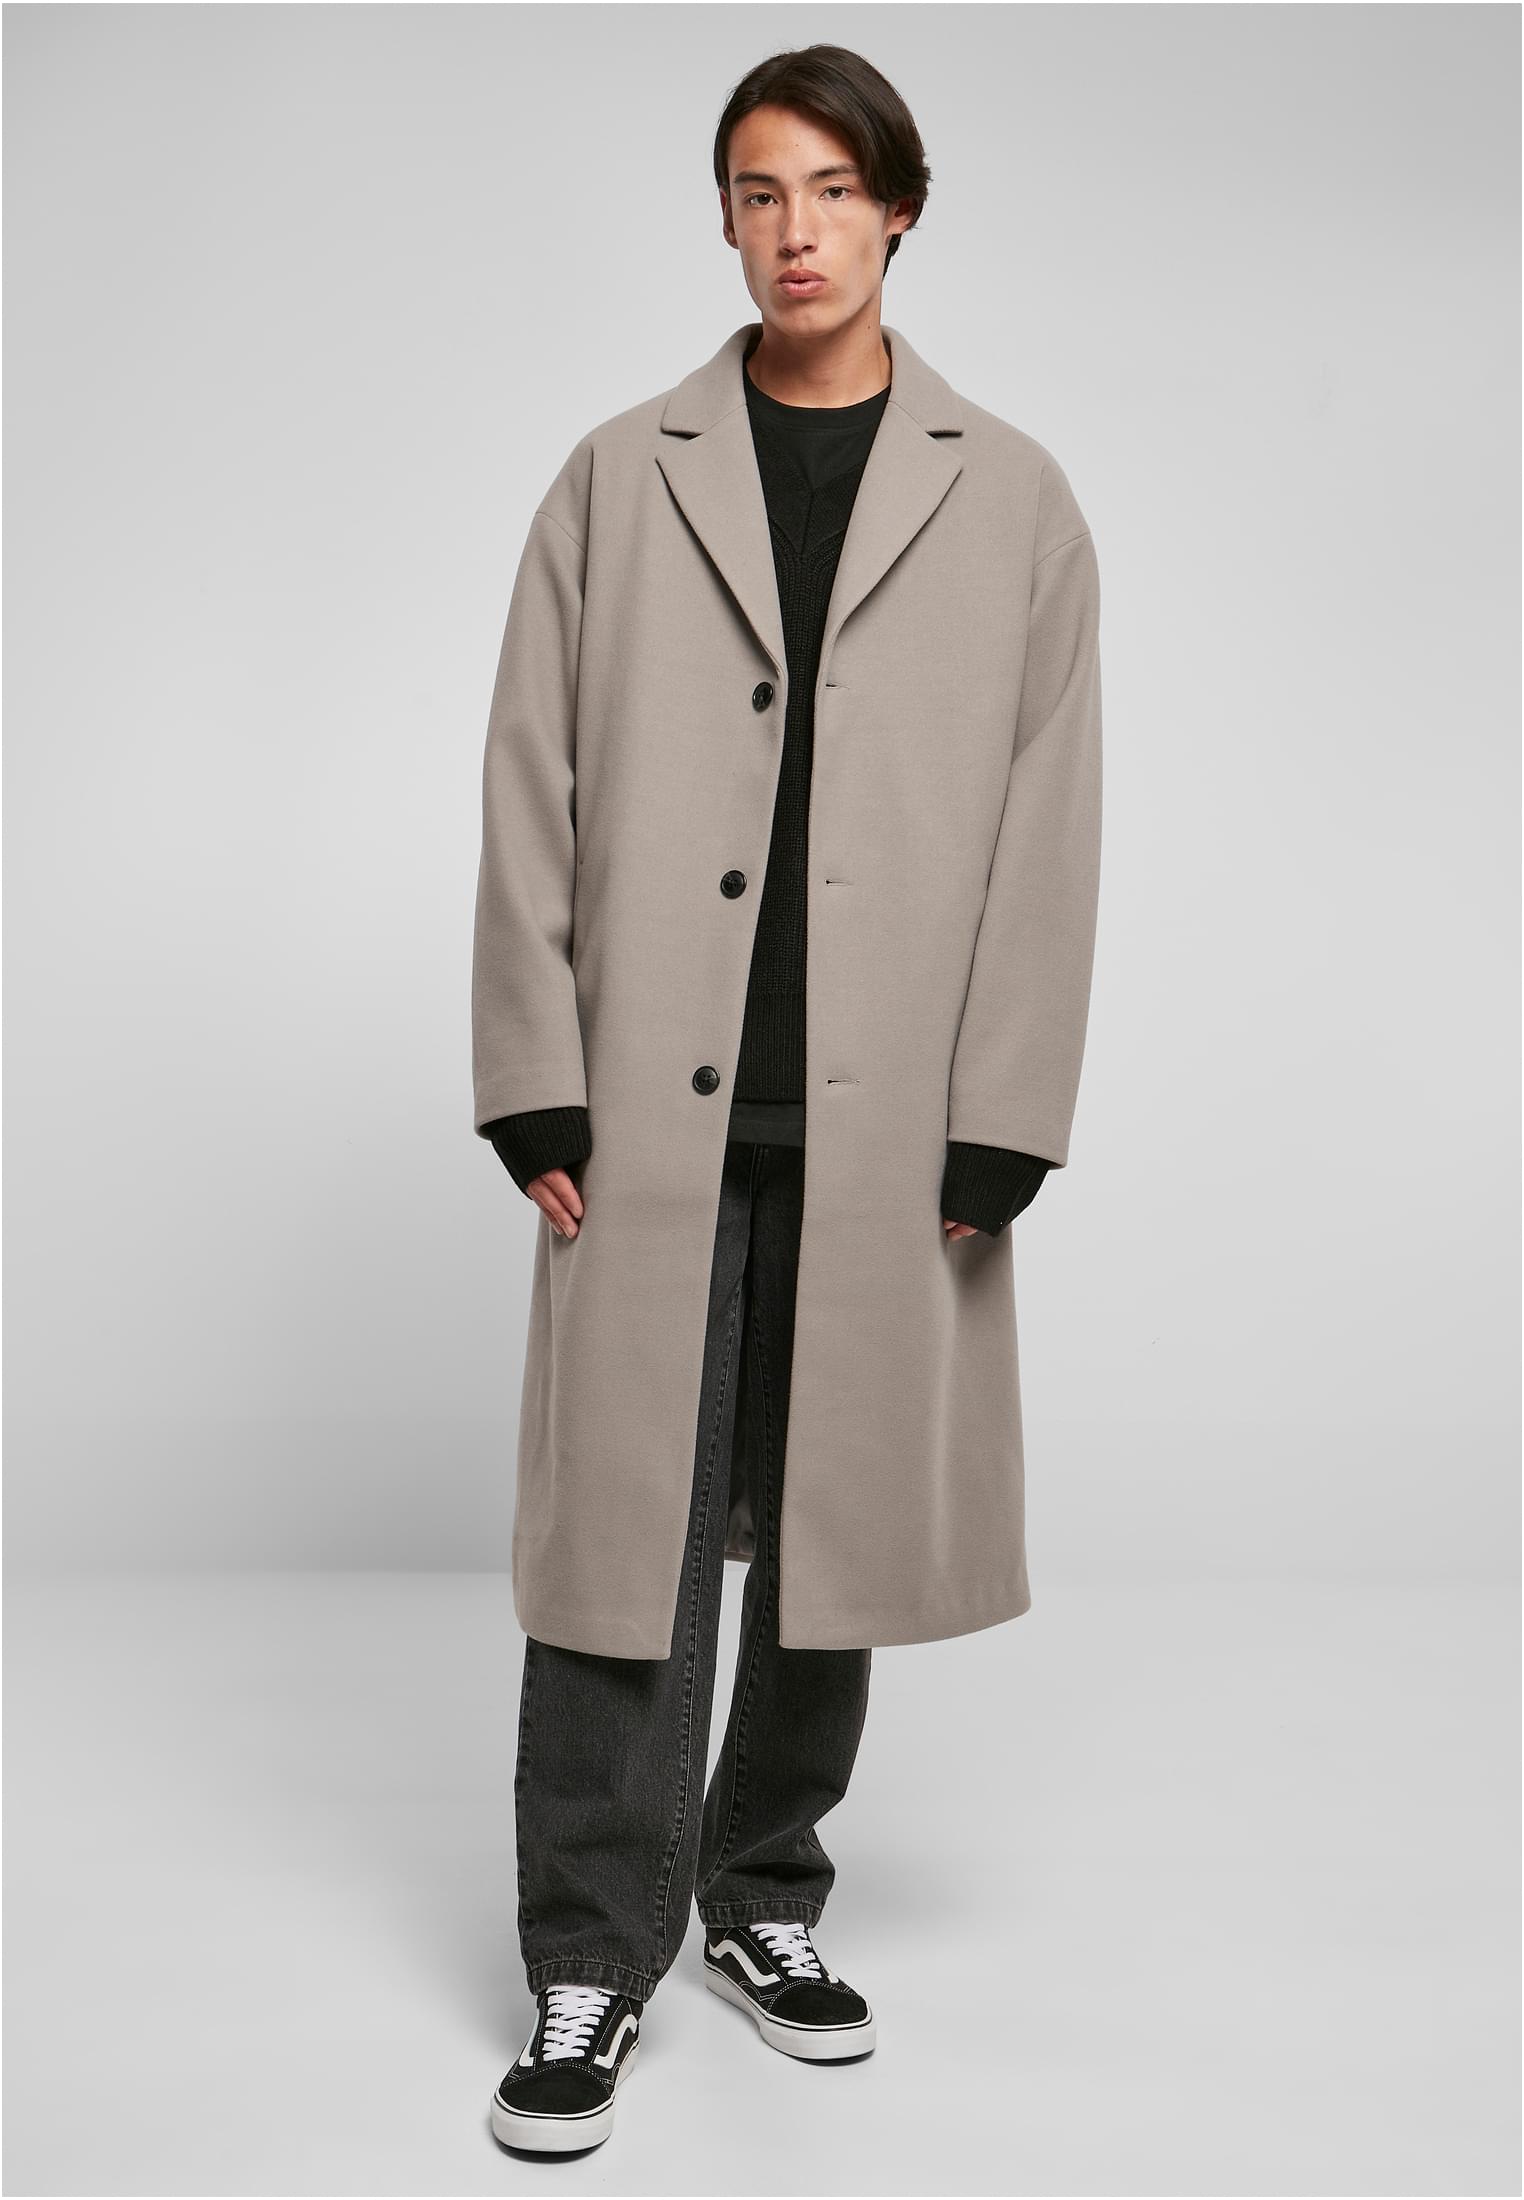 Long coat grey